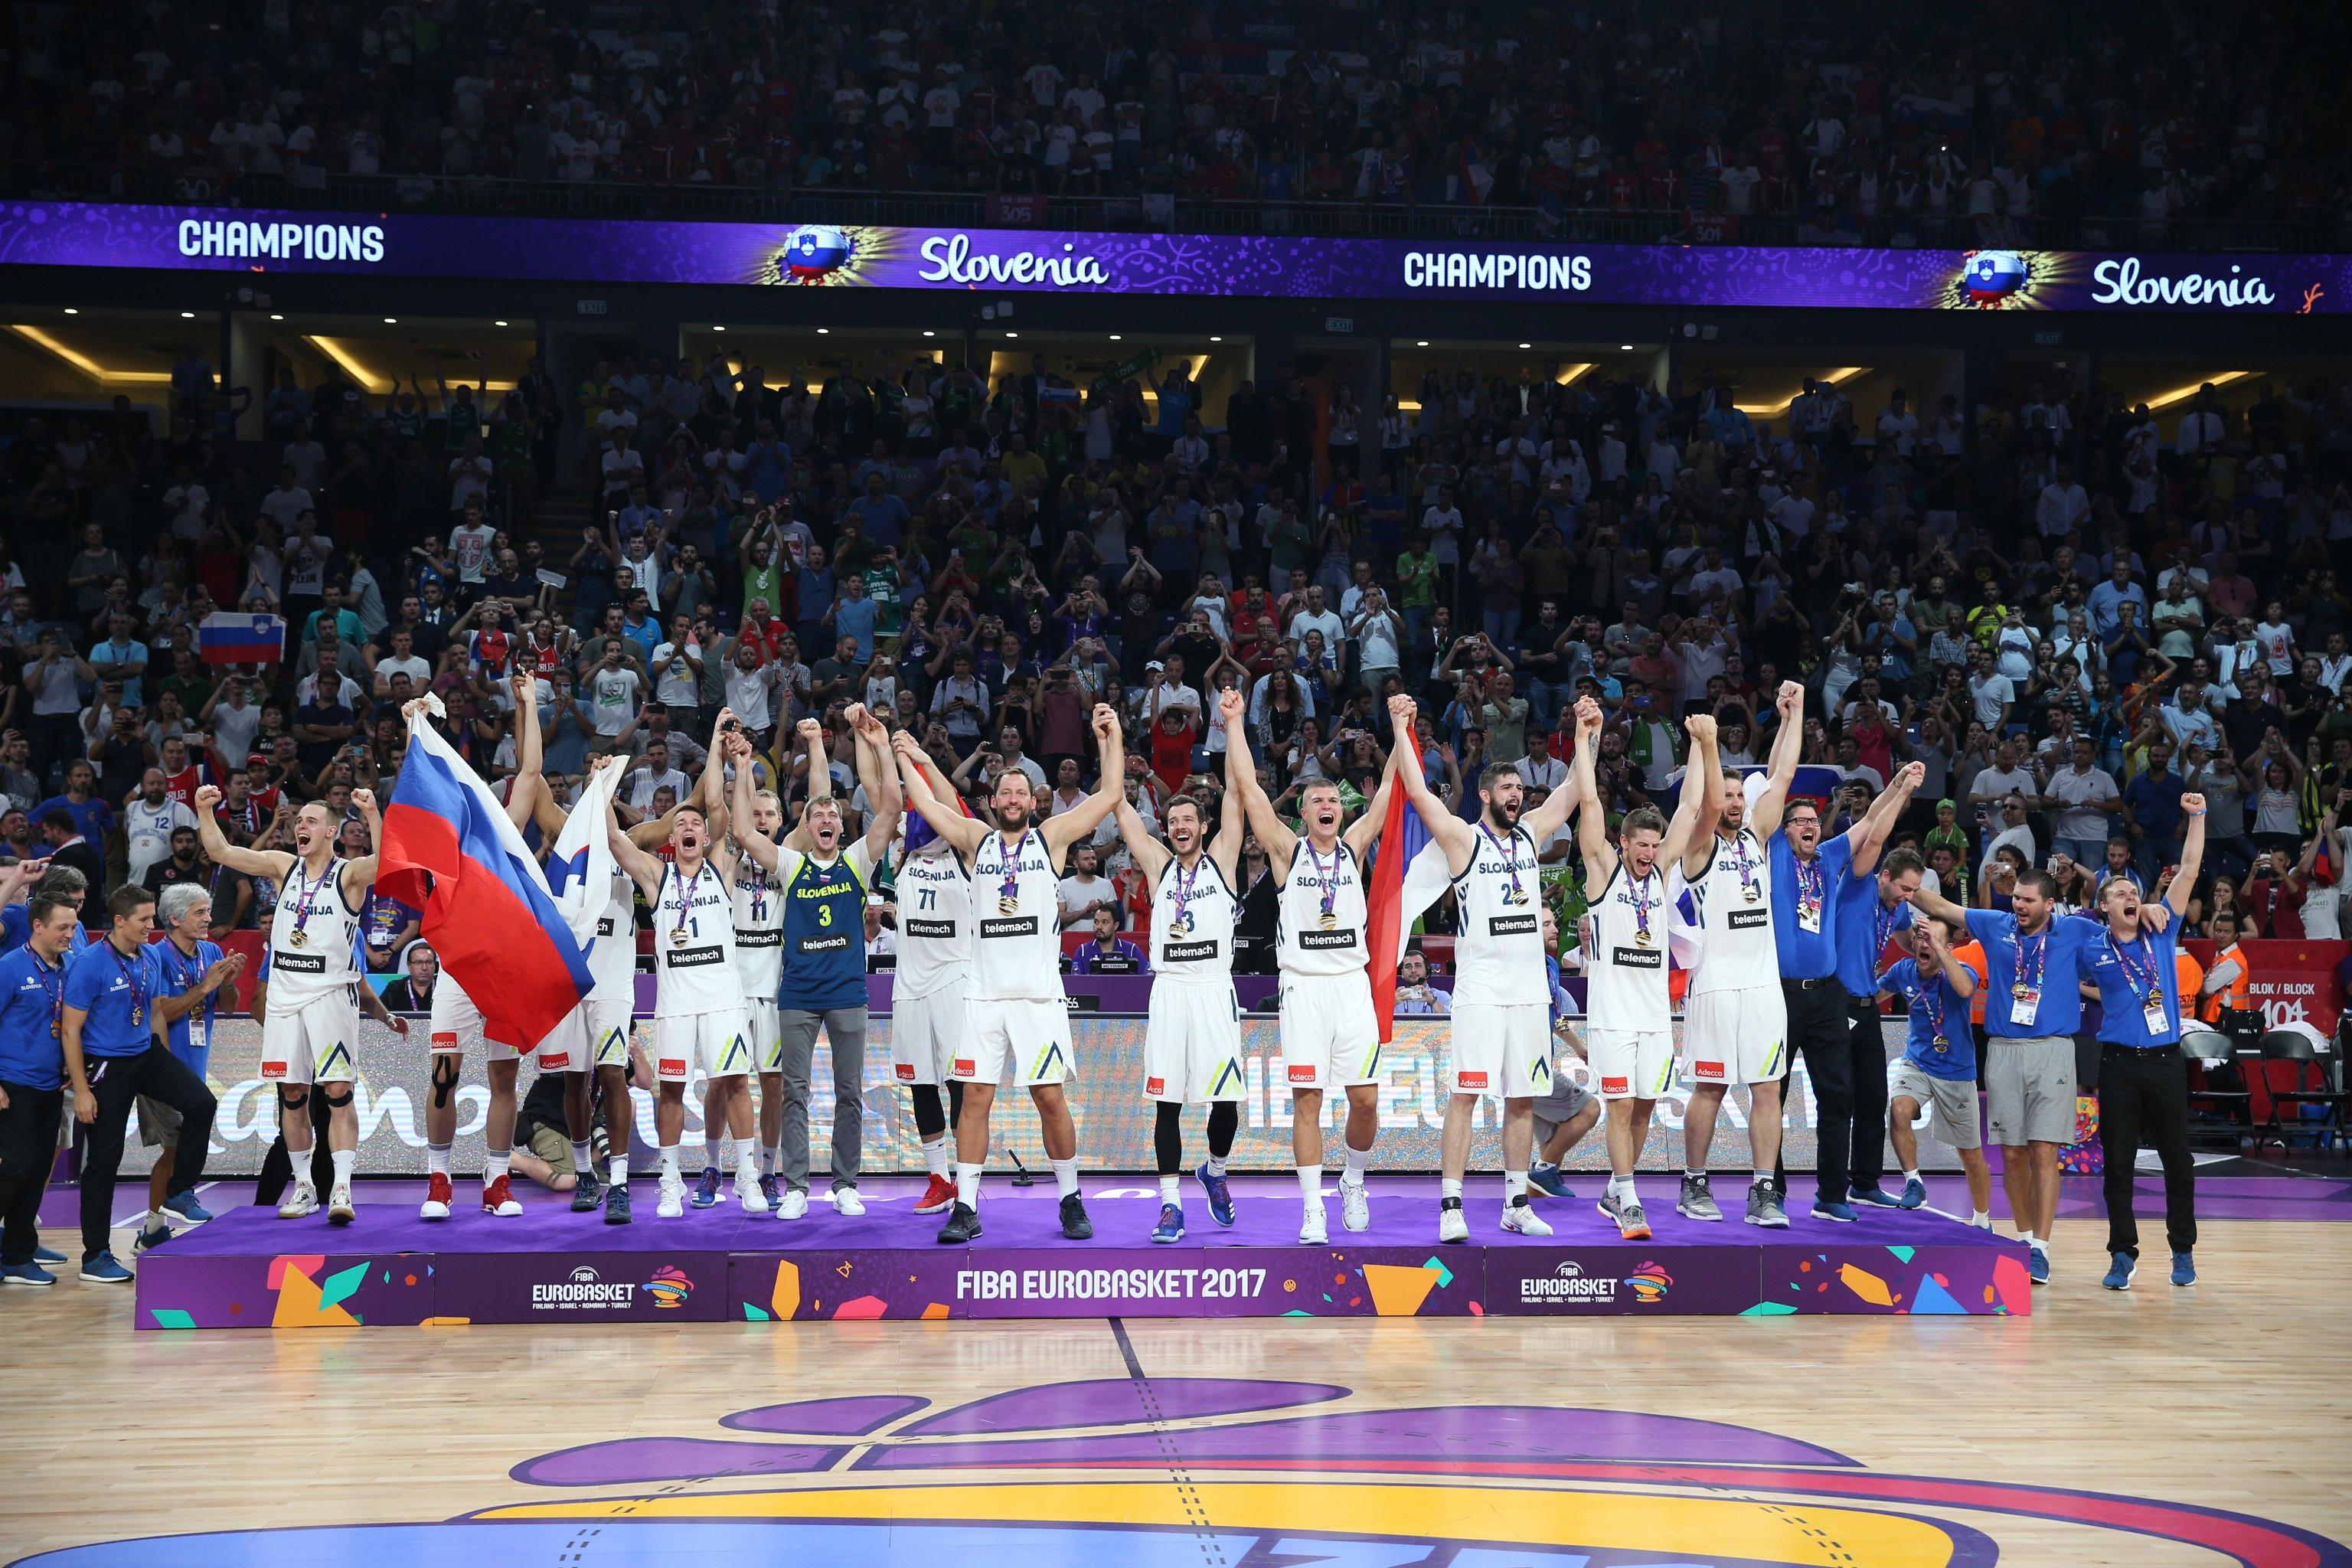 La squadra slovena al completo sul podio: prima vittoria agli europei di basket